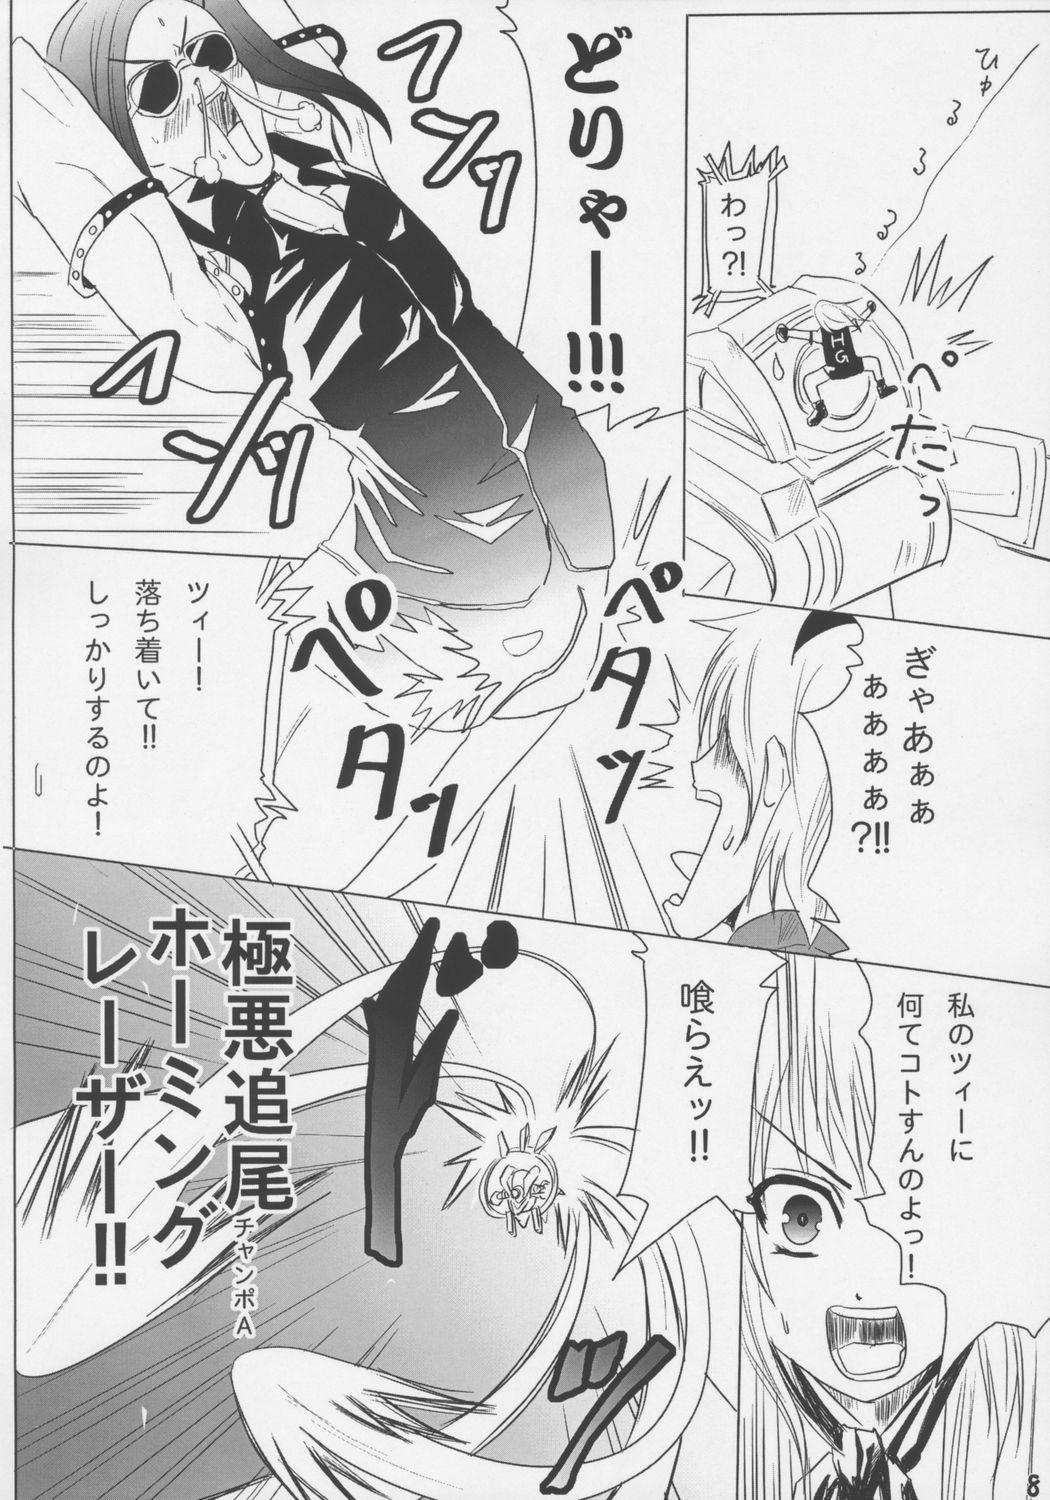 Mas Senkoro - Senko no ronde Off - Page 7